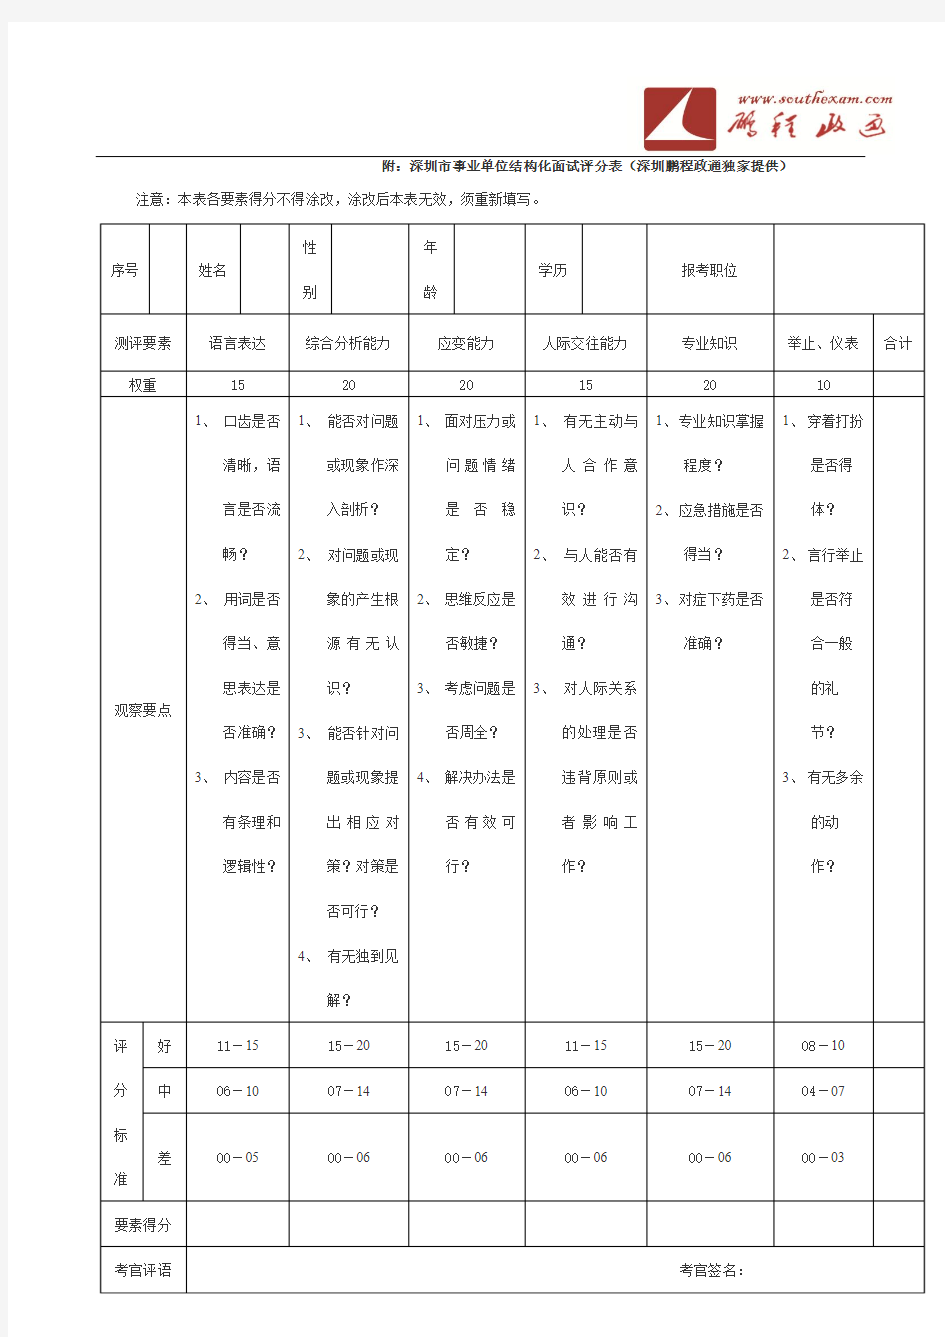 深圳市事业单位结构化面试评分表